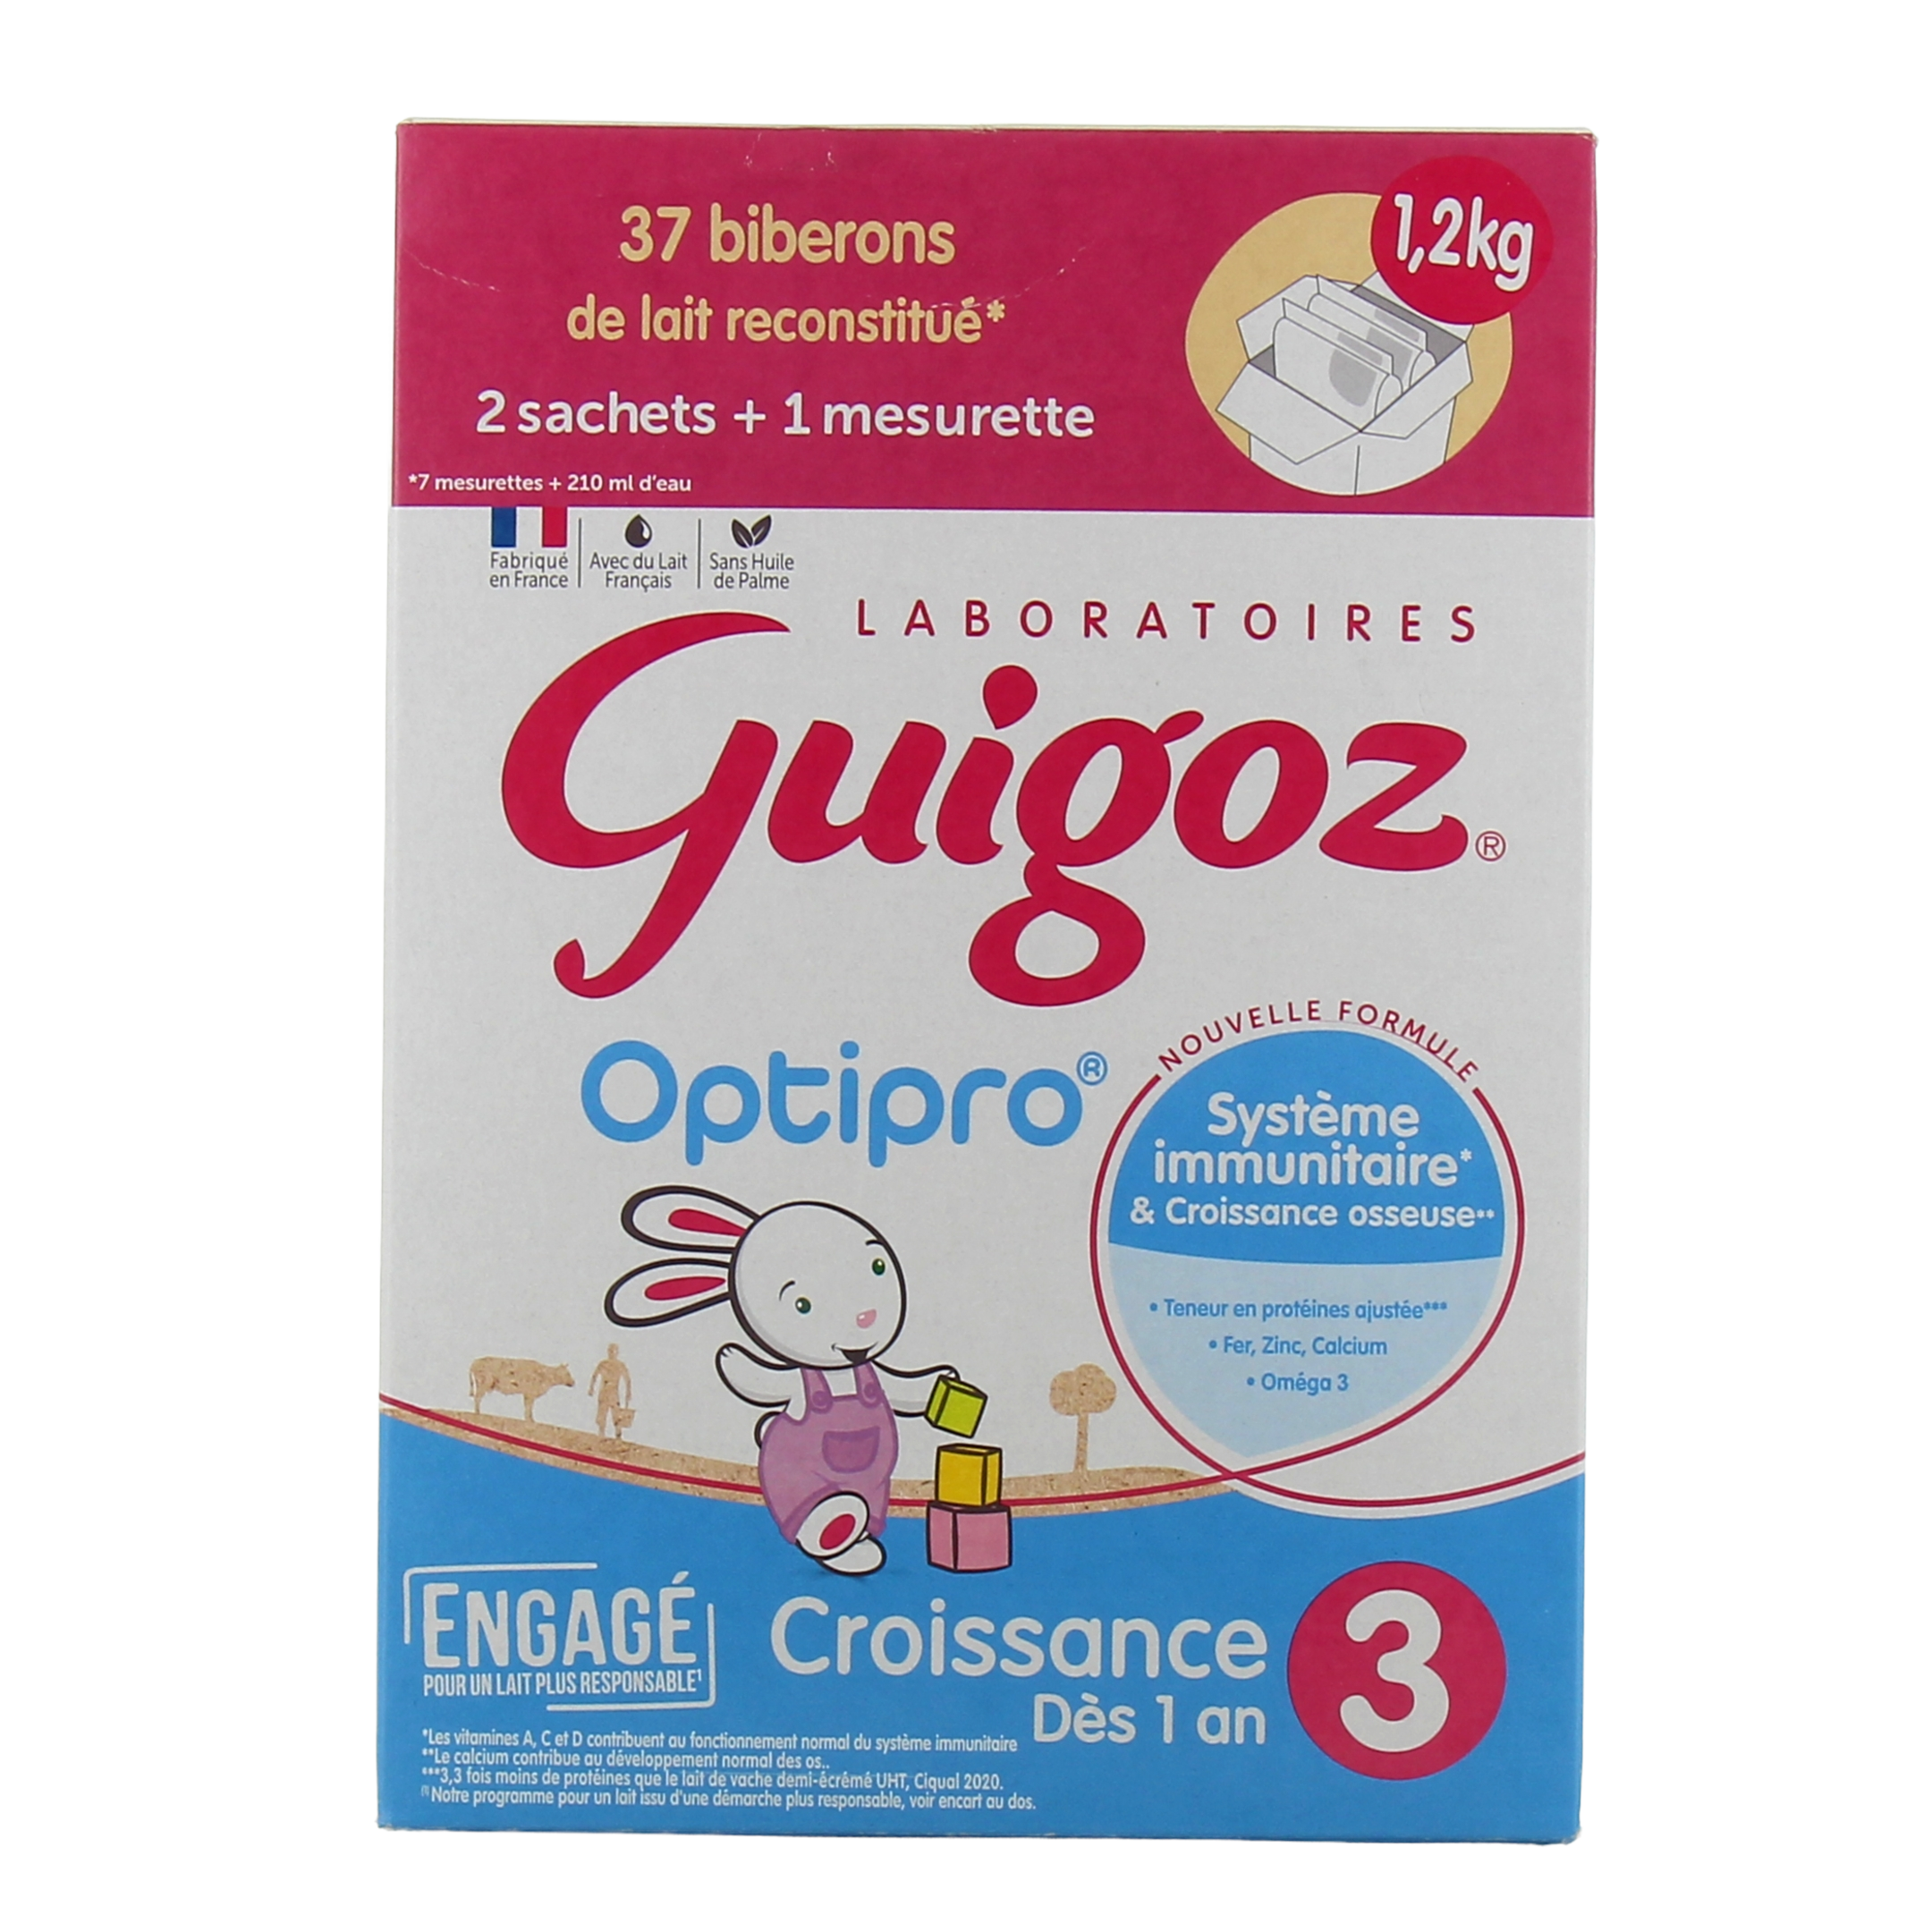 Guigoz - GUIGOZ 3 Lait de Croissance dès 1 an 930g